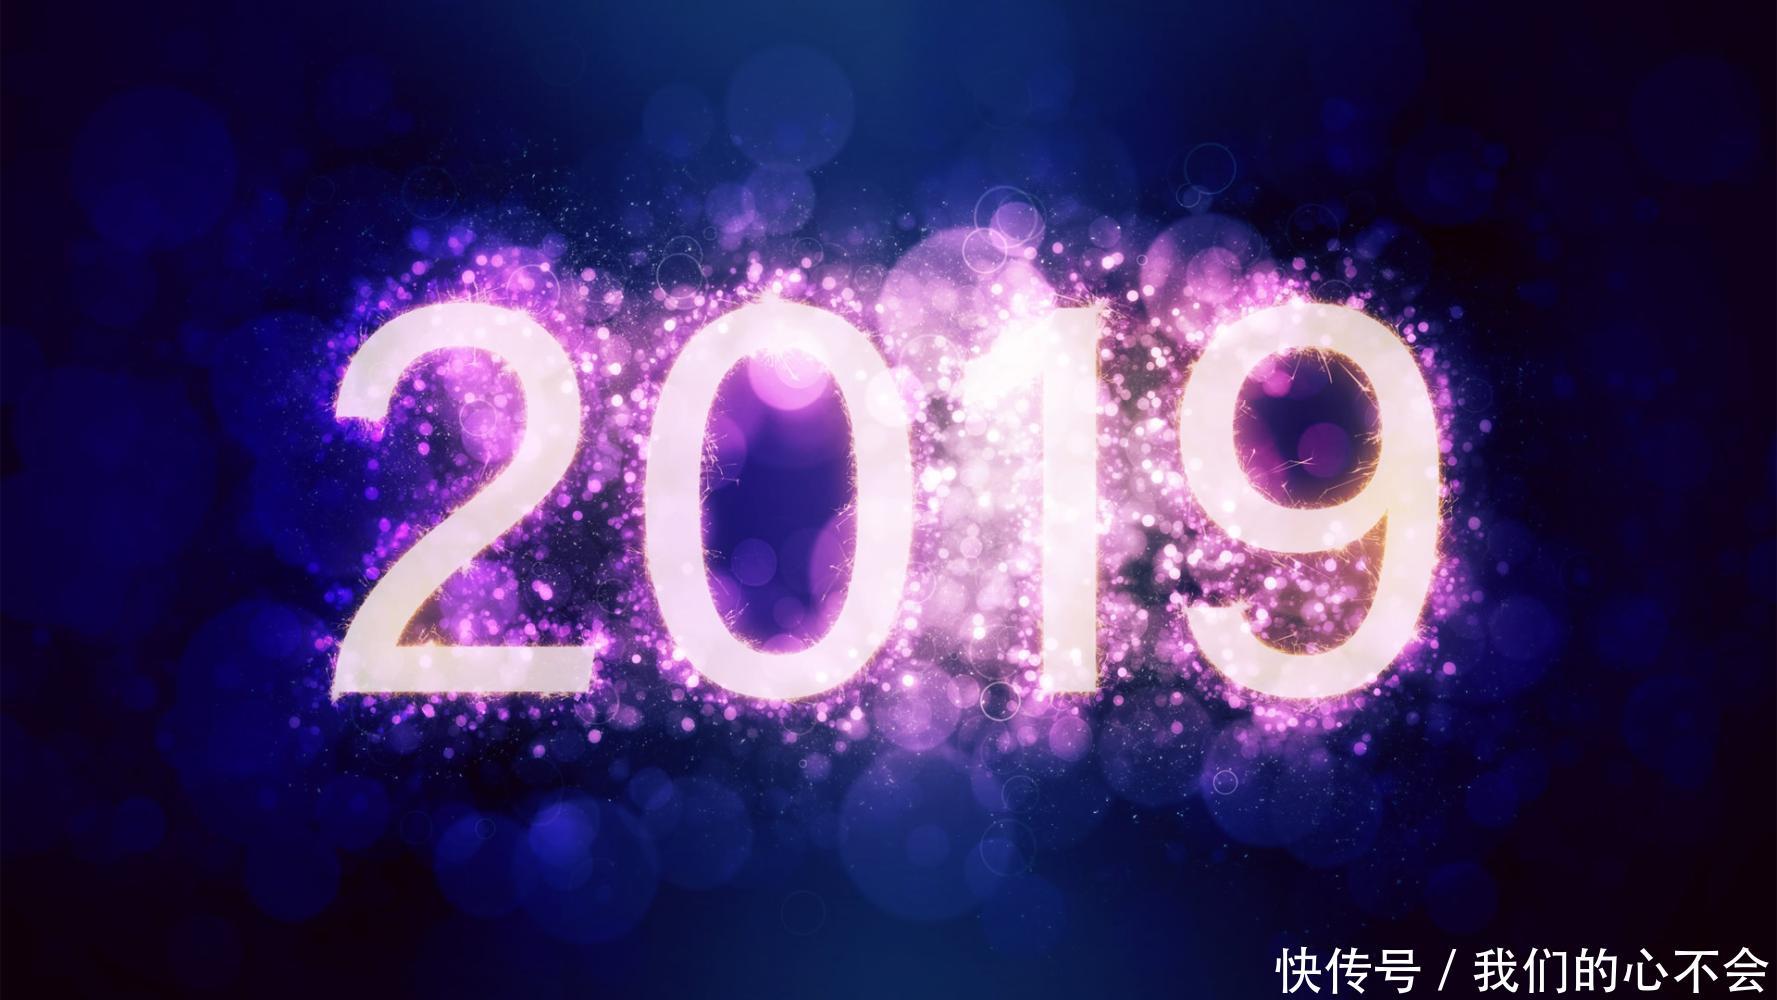 2019年元旦祝福短信集锦, 发微信朋友圈的新年